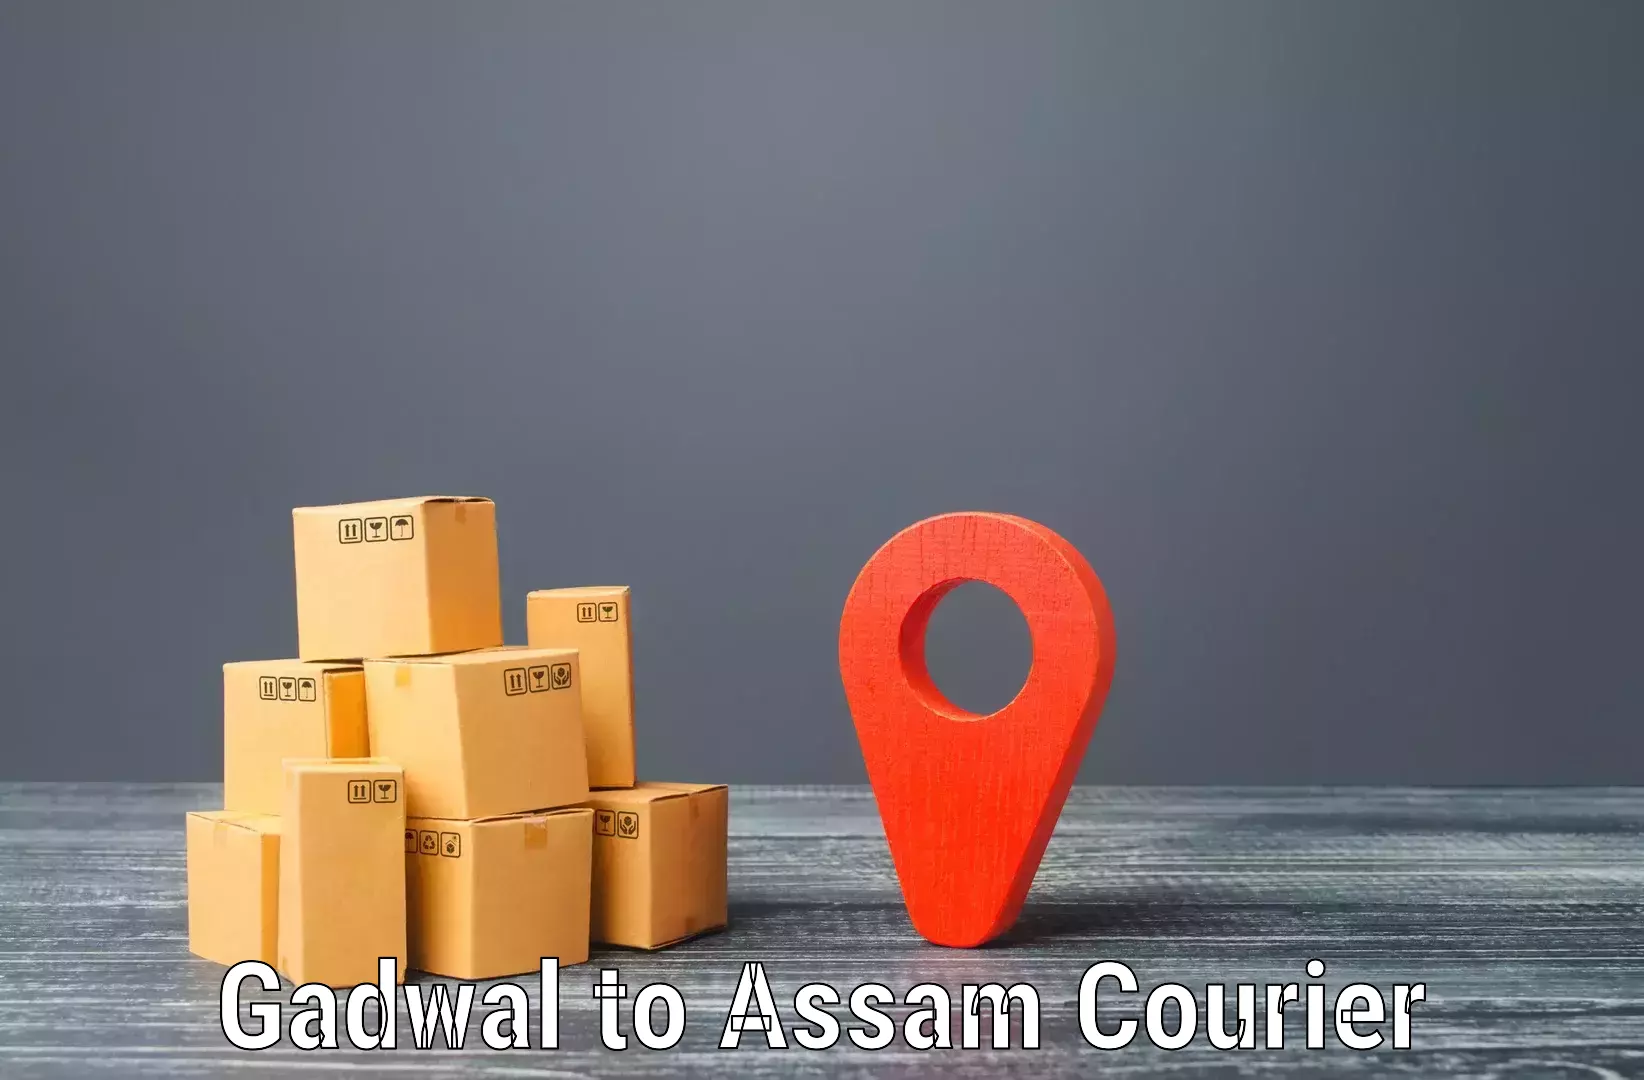 Express logistics service Gadwal to Lala Assam